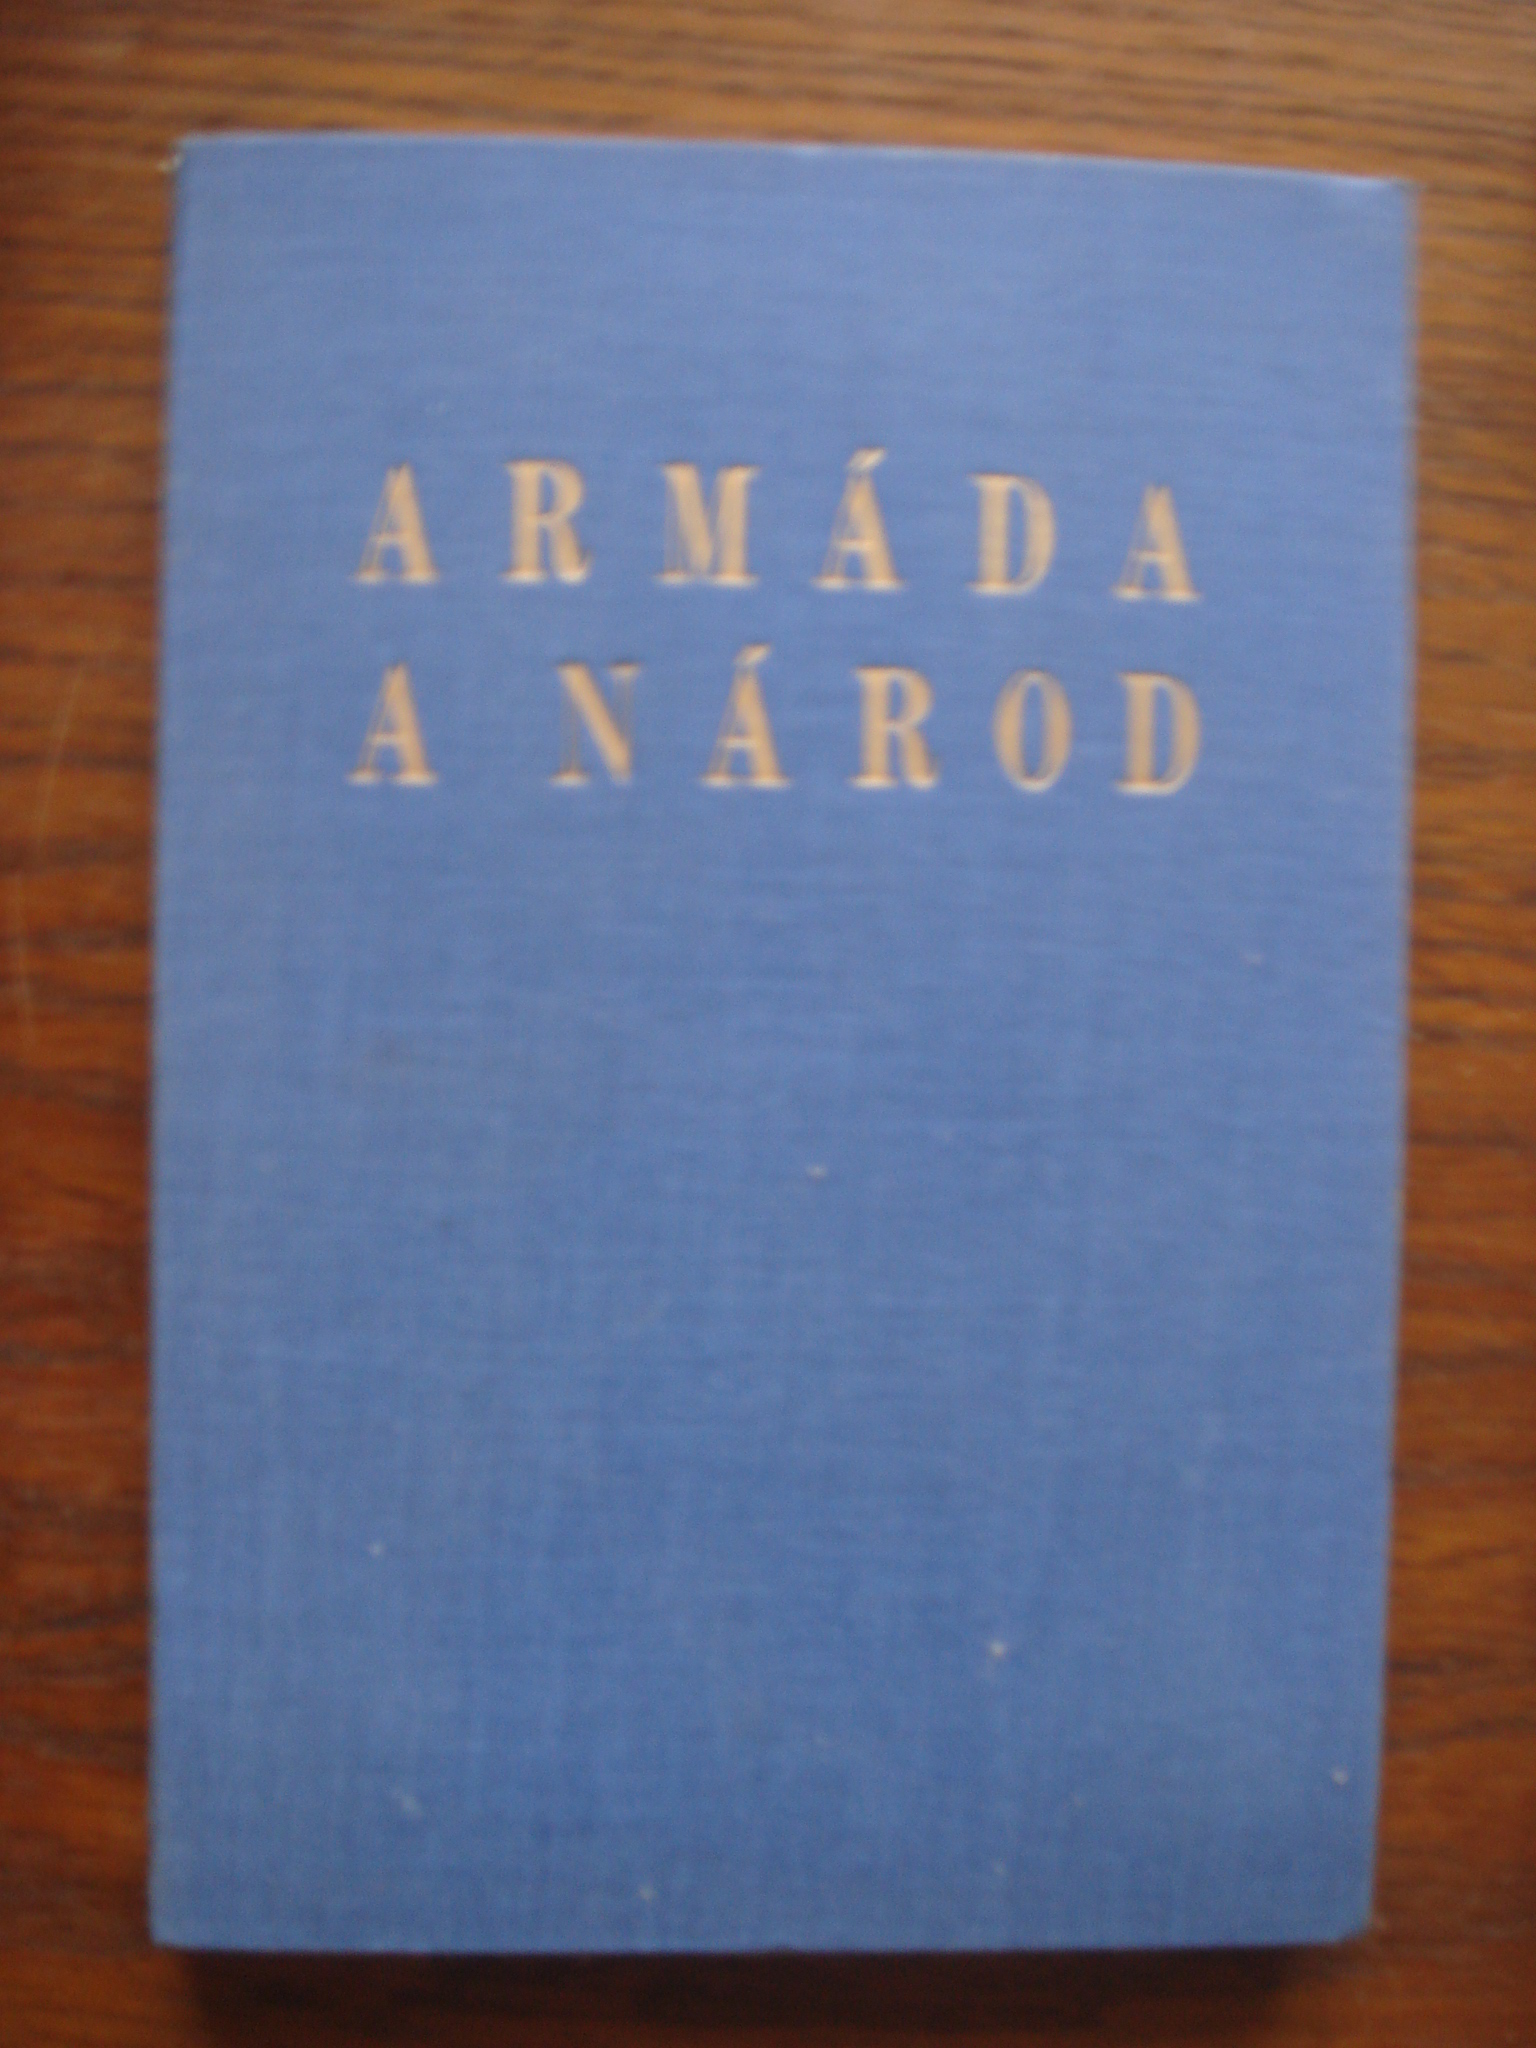 zobrazit detail knihy Armda a nrod